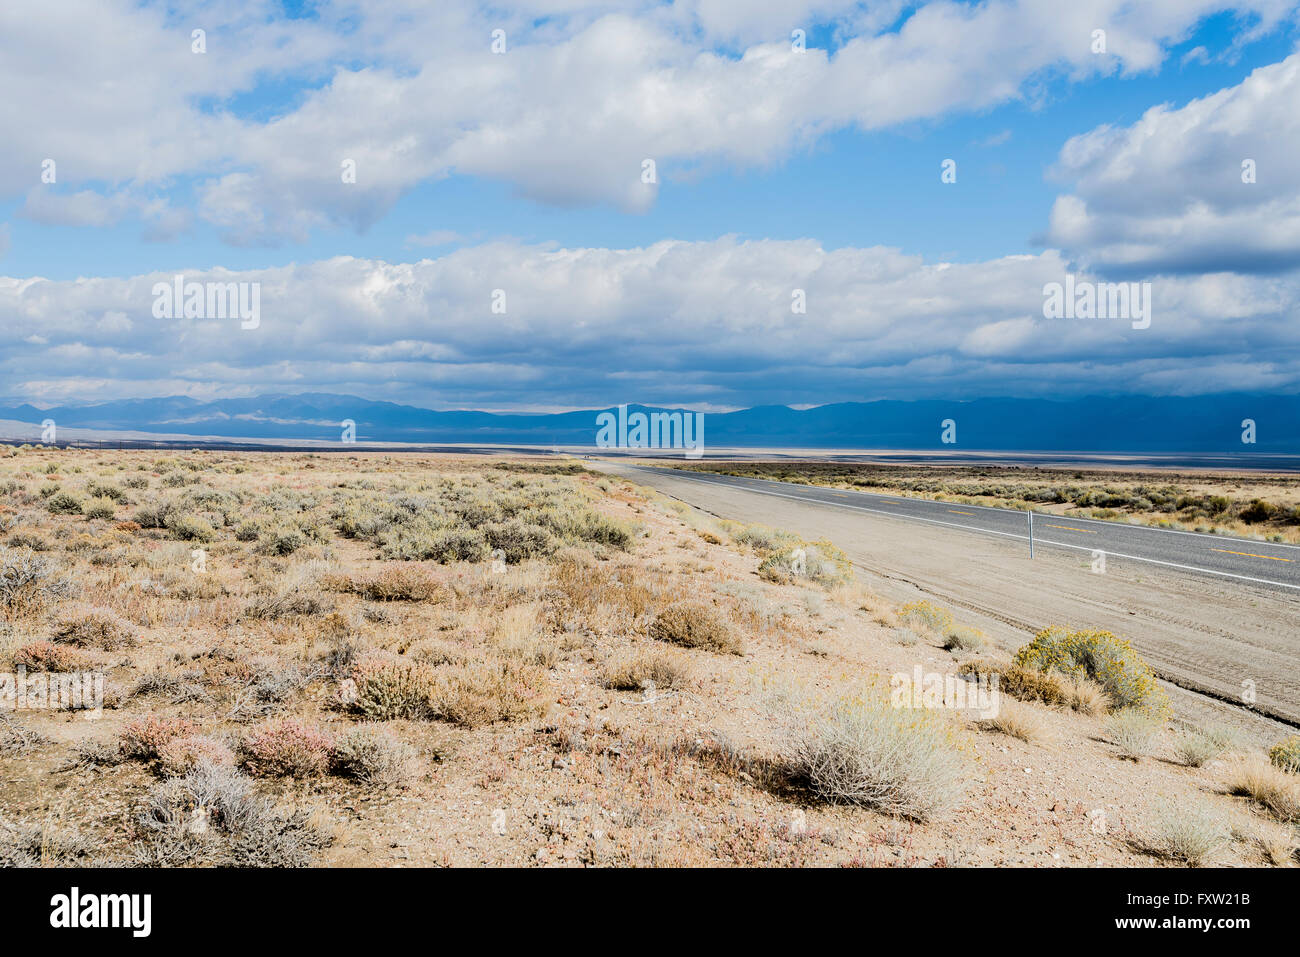 Eine autofreie Strecke von Highway 50, The Loneliest Road in America, in der Wüste von Nevada. Stockfoto